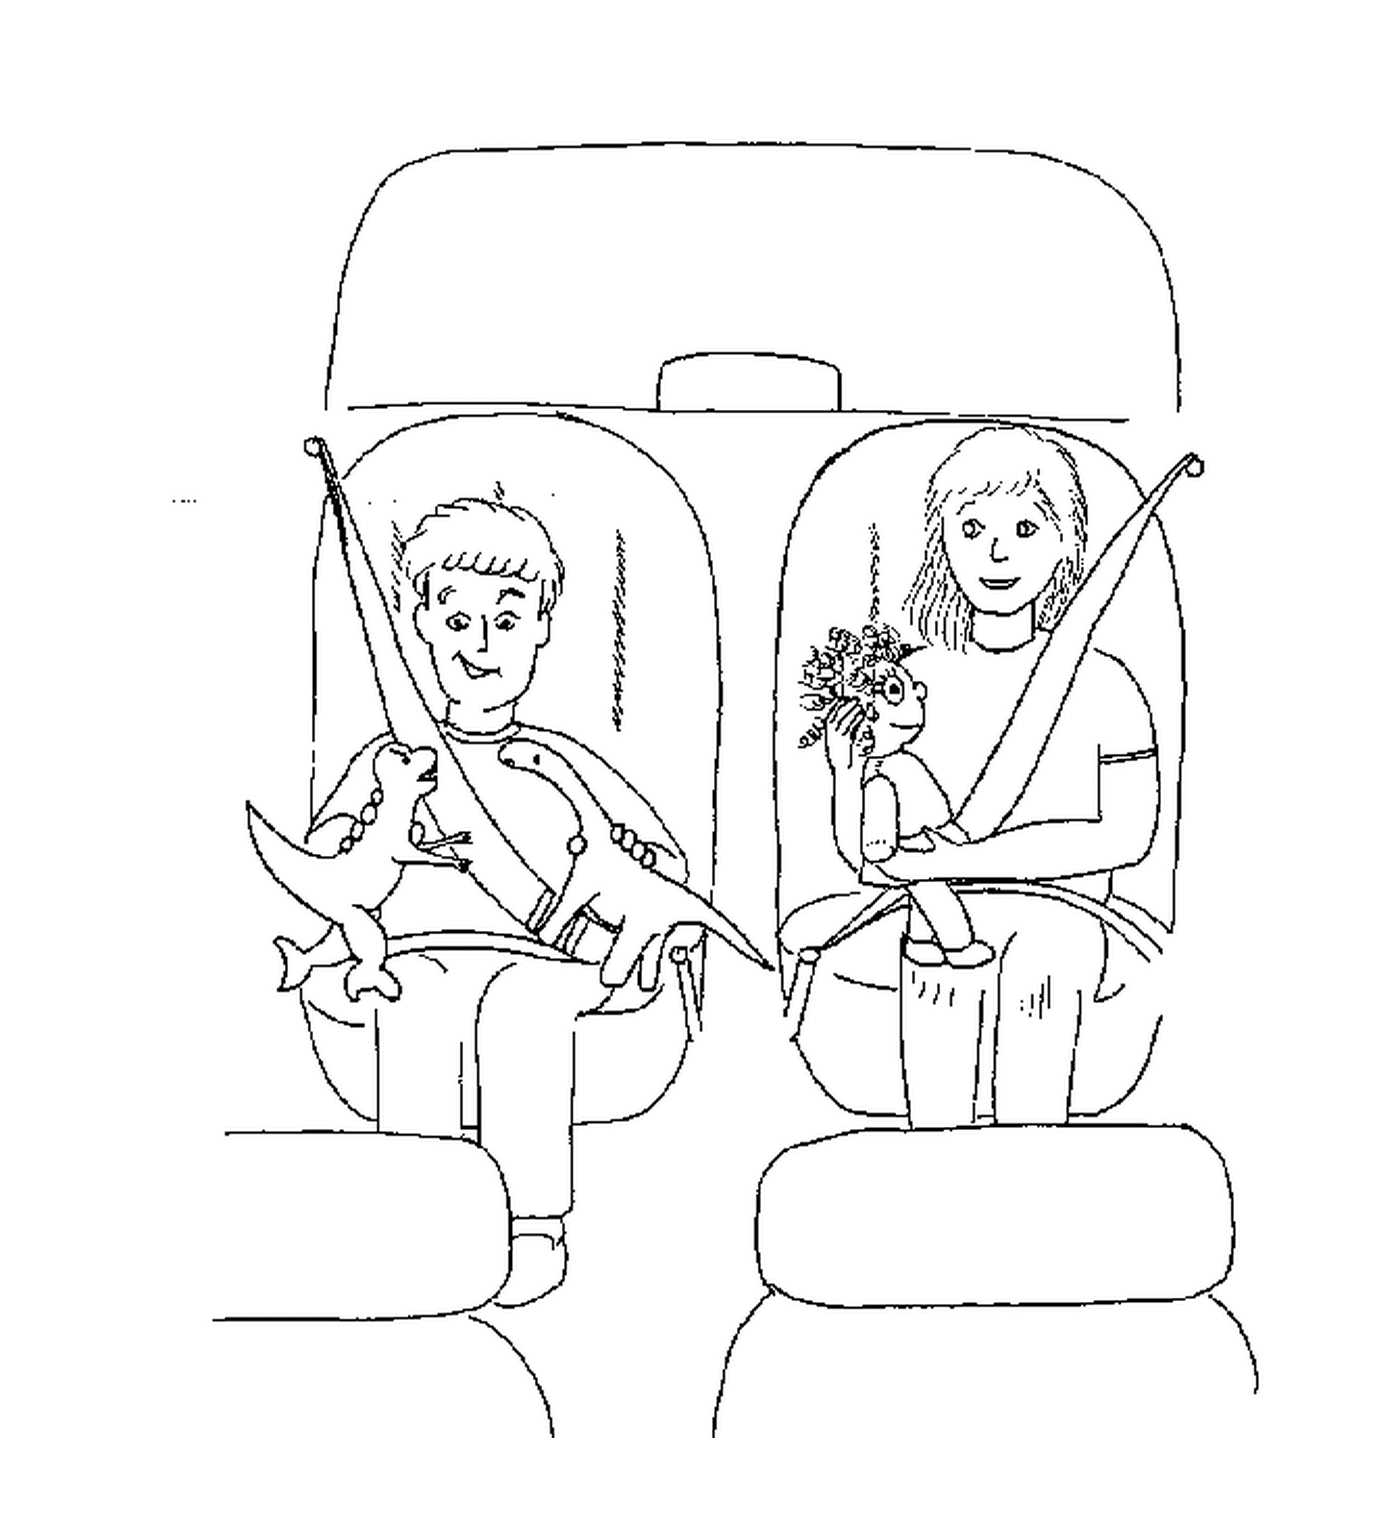  दो लोग एक कार में बैठे हैं 